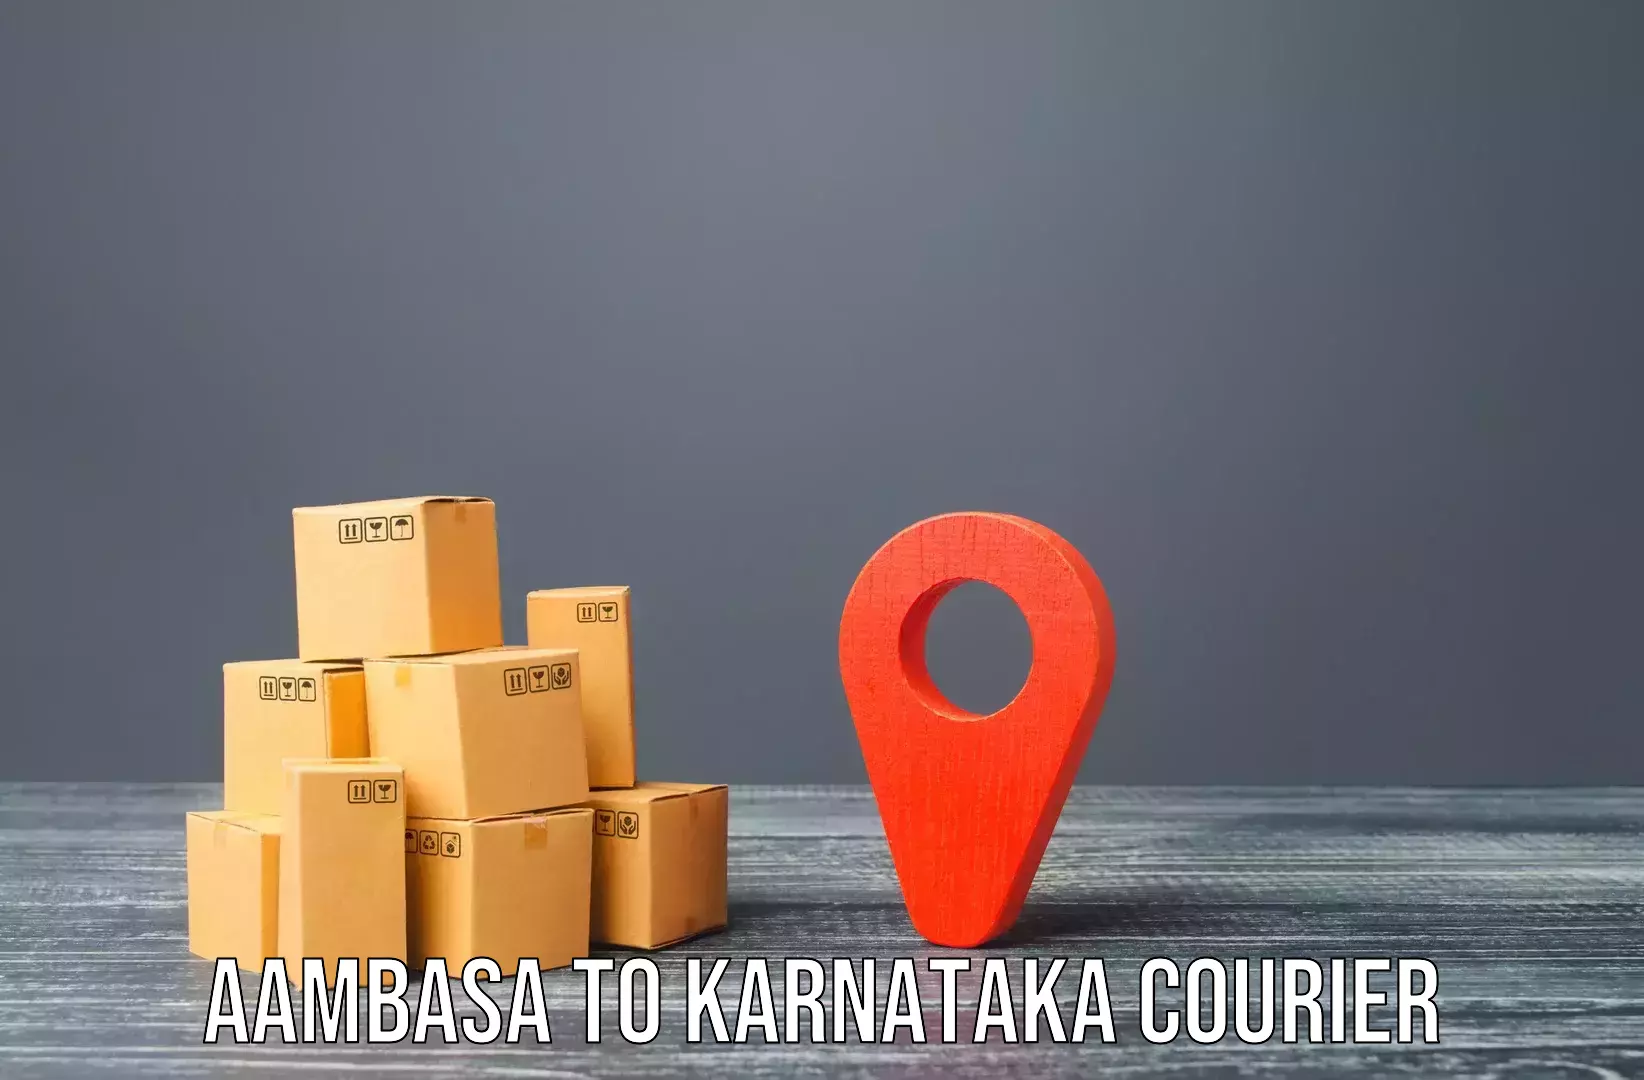 Professional furniture movers Aambasa to Mannaekhelli